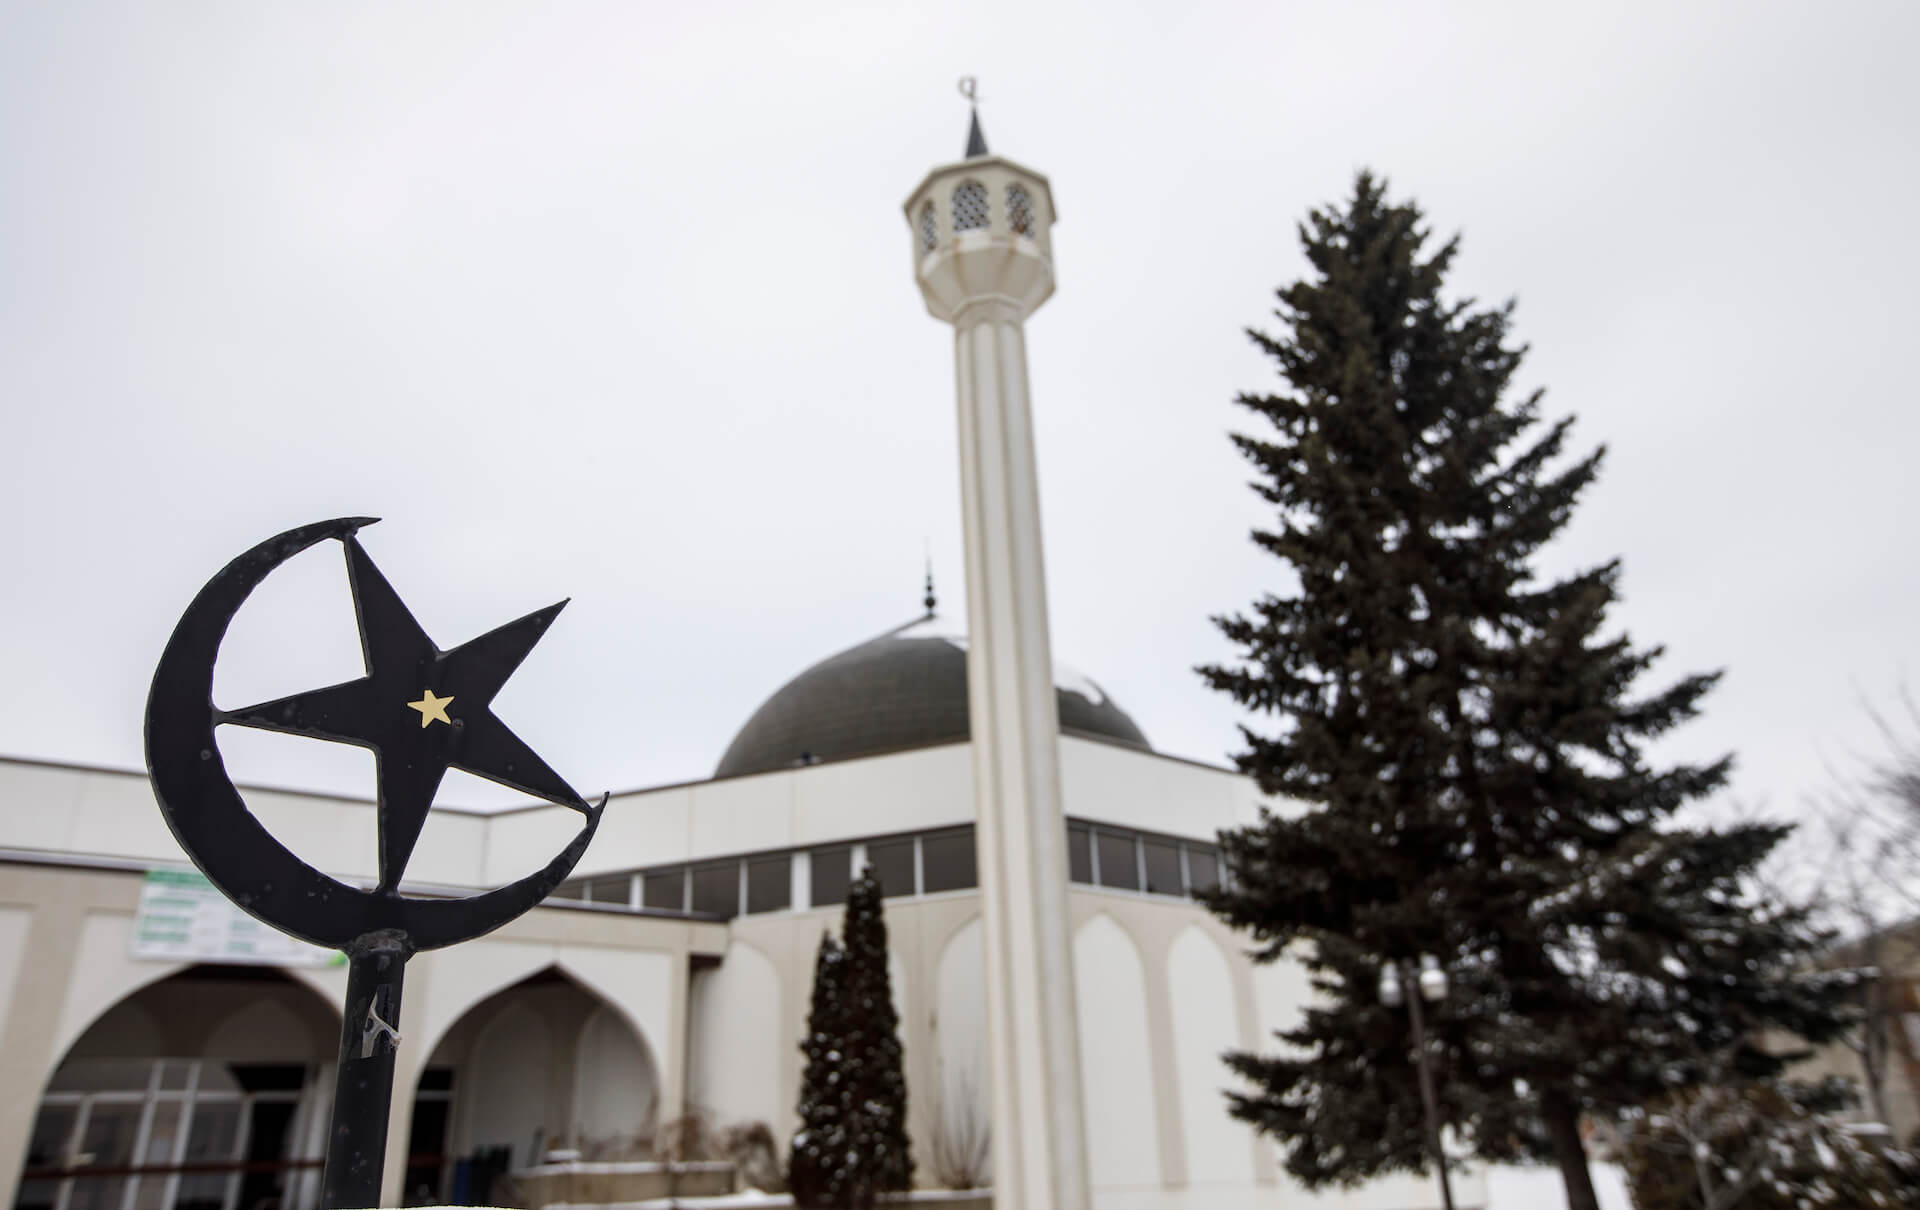 Image de la mosquée Al Rashid du nord-ouest d'Edmonton